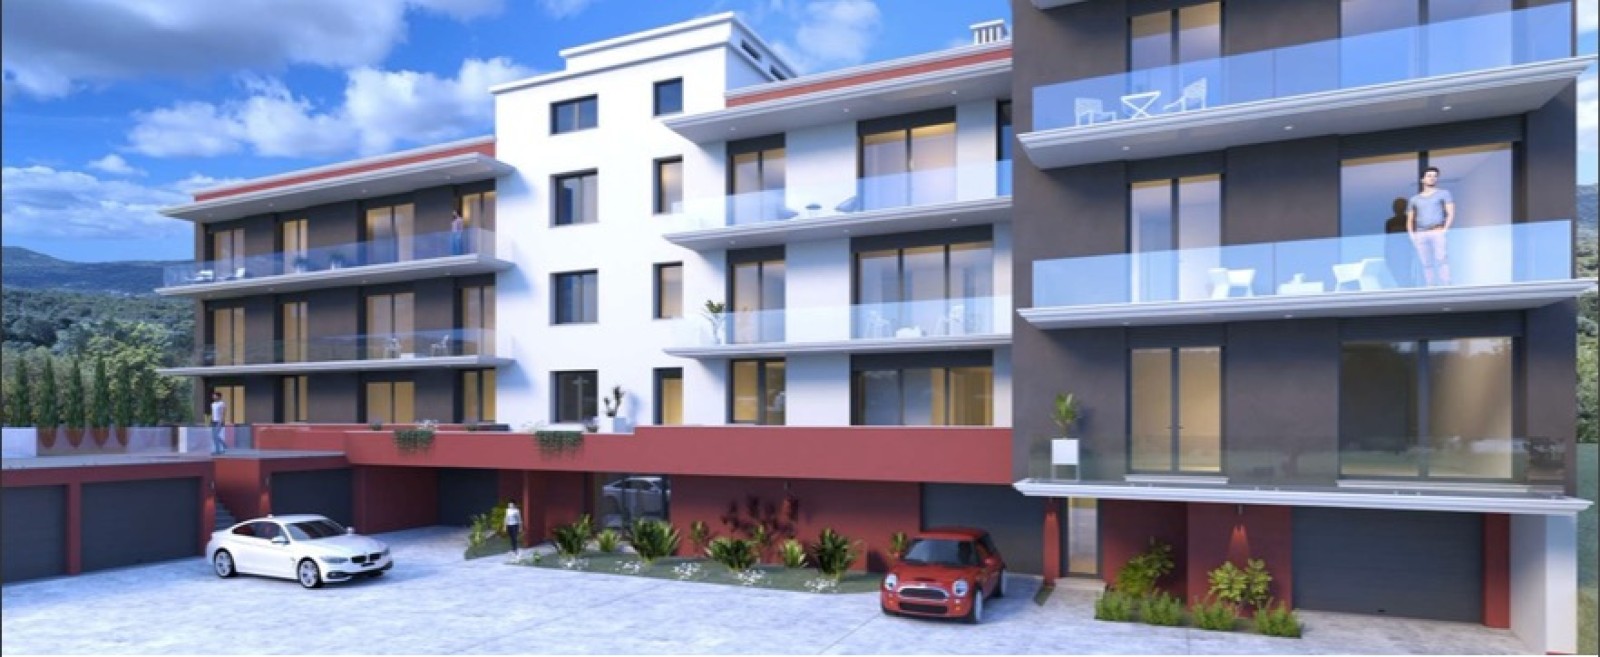 Piso duplex de 4 dormitorios en venta en São brás de Alportel, Algarve_225246